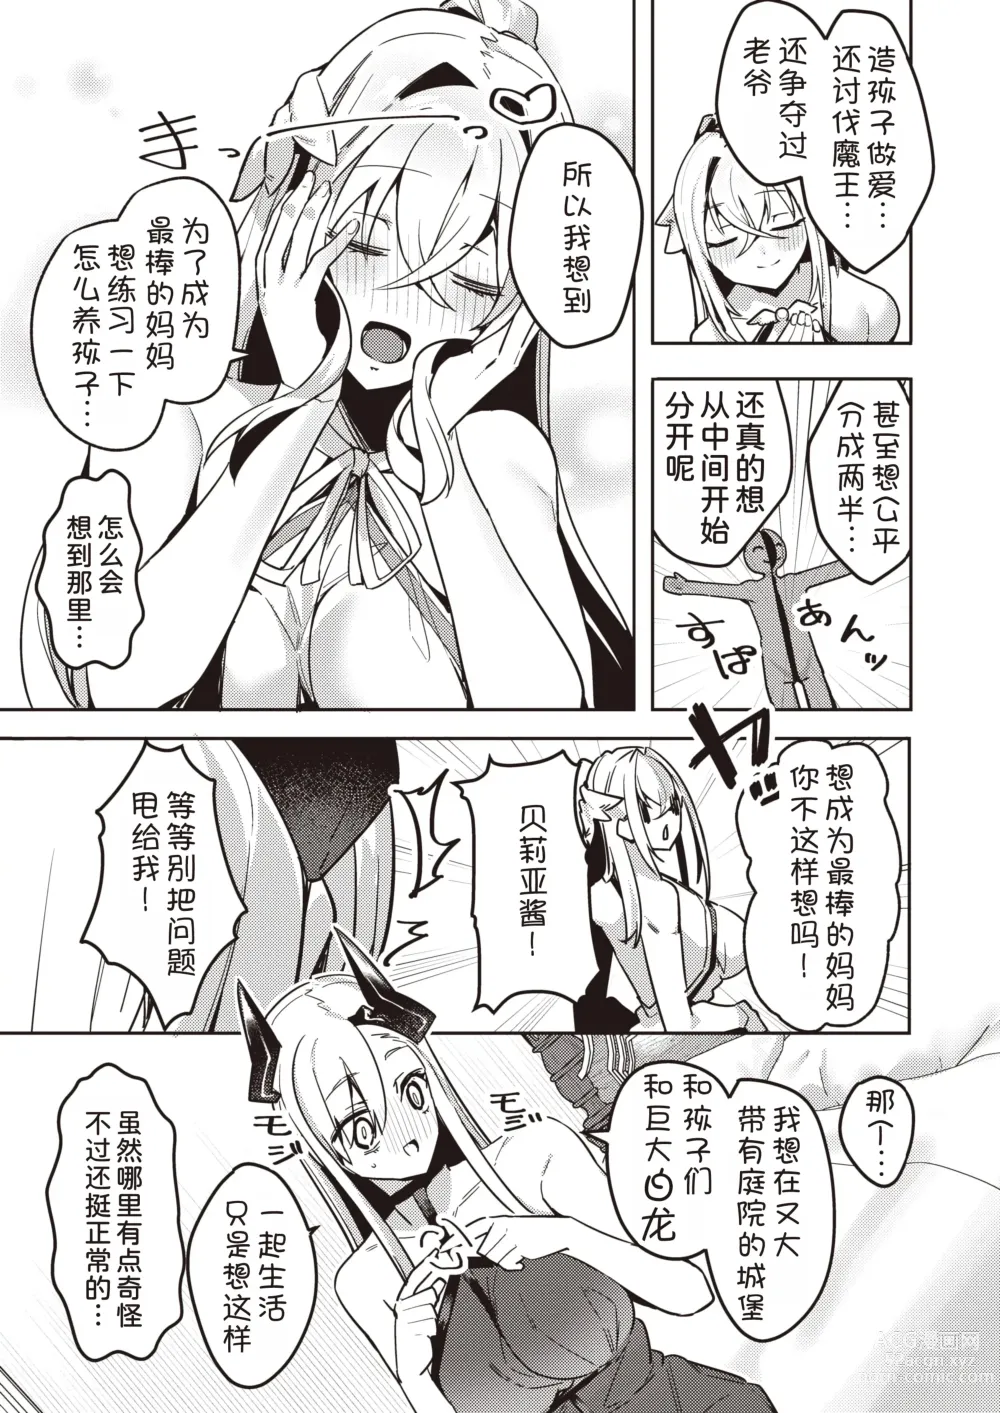 Page 4 of manga Chotto Yabai Megami to Maou to Amayakababubabu Suru no wa Dame desu ka?